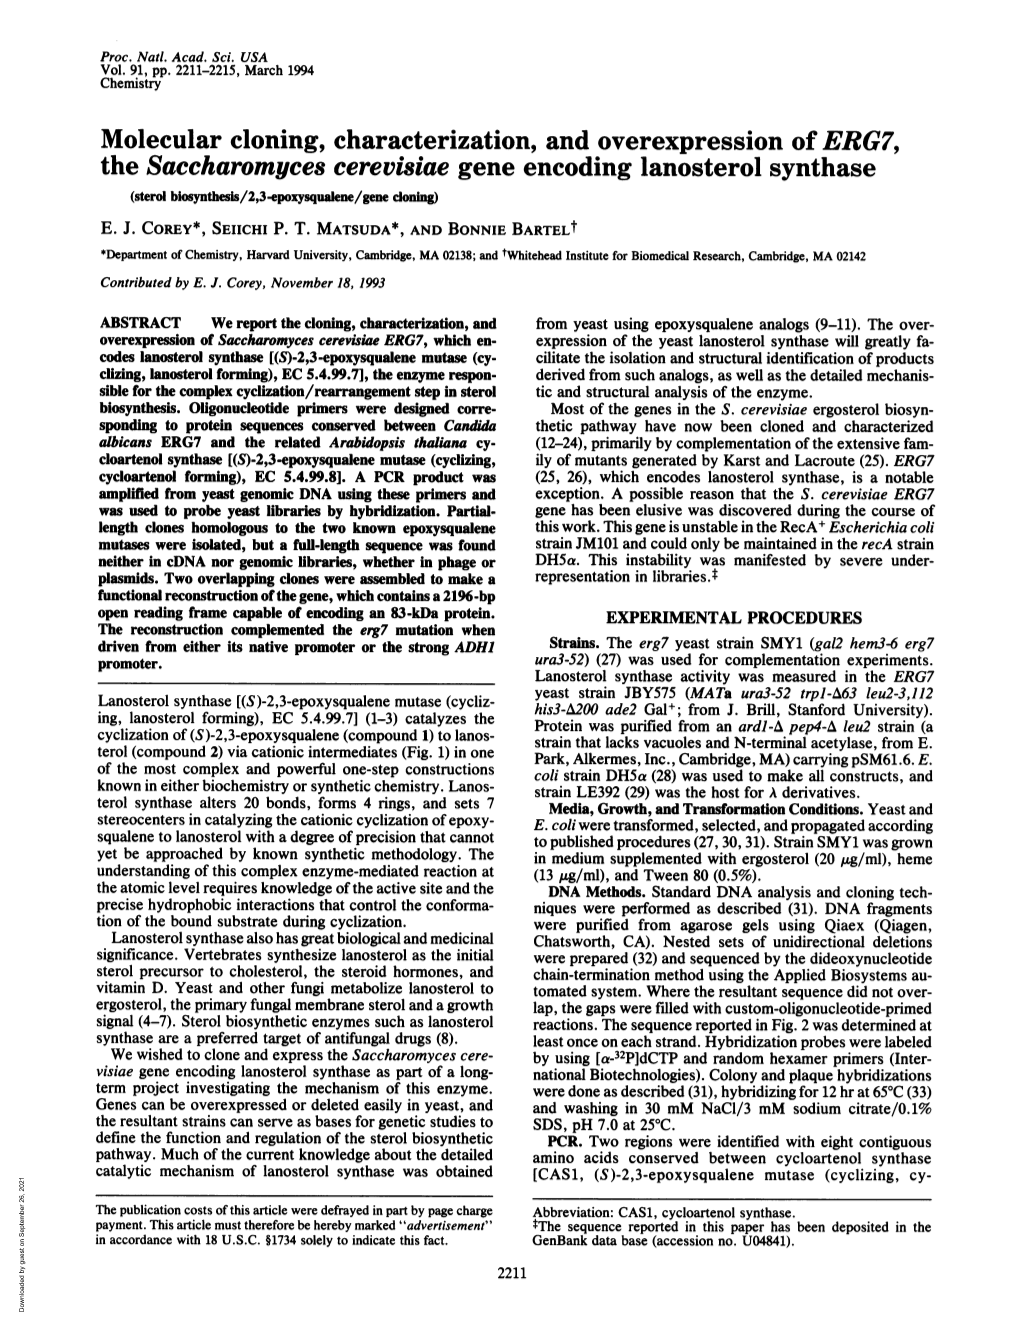 The Saccharomyces Cerevisiae Gene Encoding Lanosterol Synthase (Sterol Biosynthesis/2,3-Epoxysqualene/Gene Cloning) E